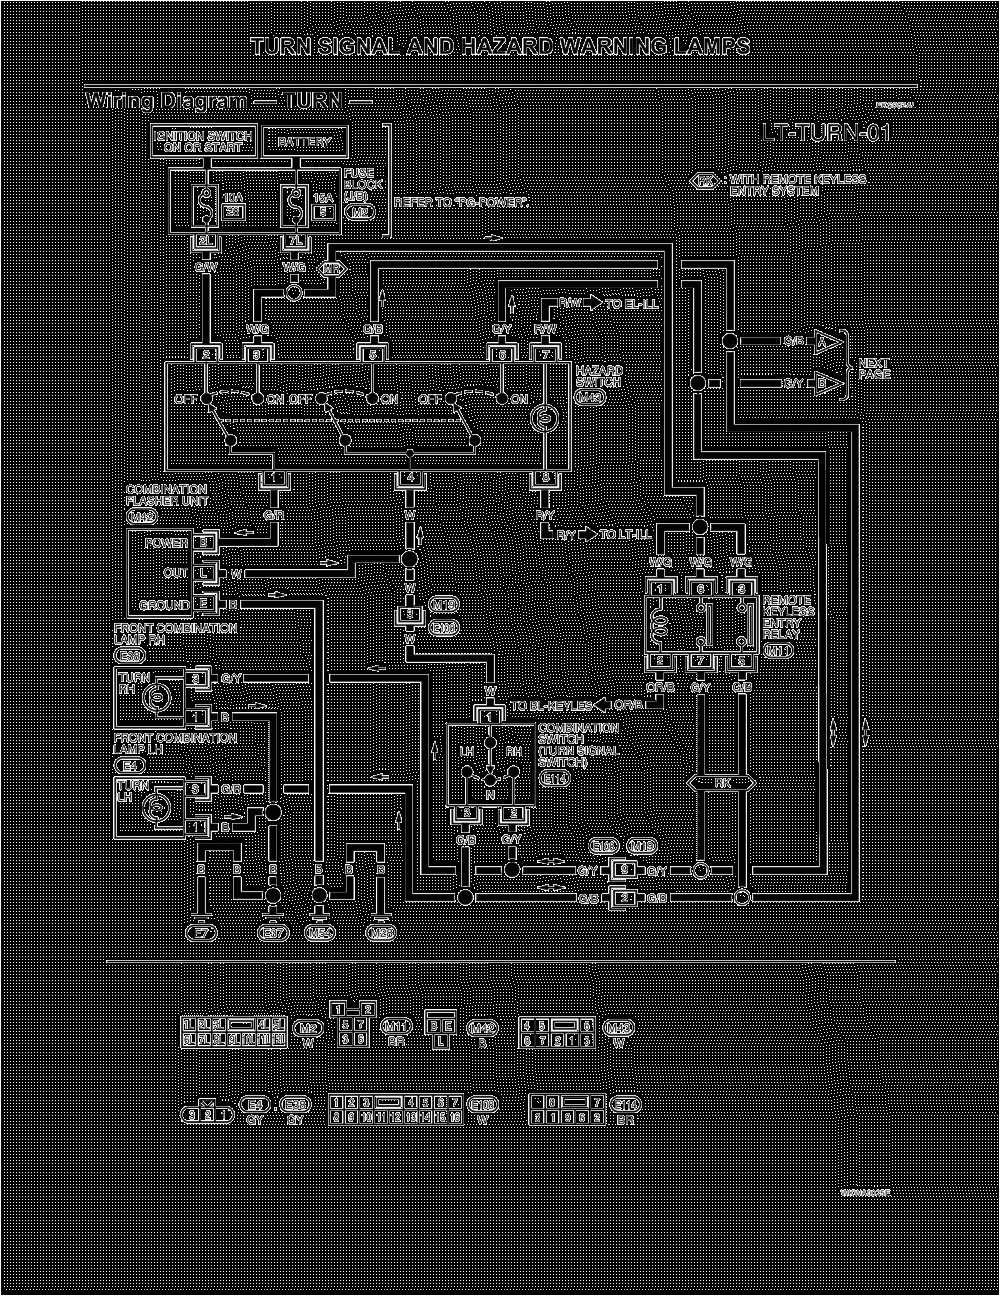 1965 Mustang Turn Signal Wiring Diagram Tj Turn Signal Wiring Diagram Diagram Base Website Wiring